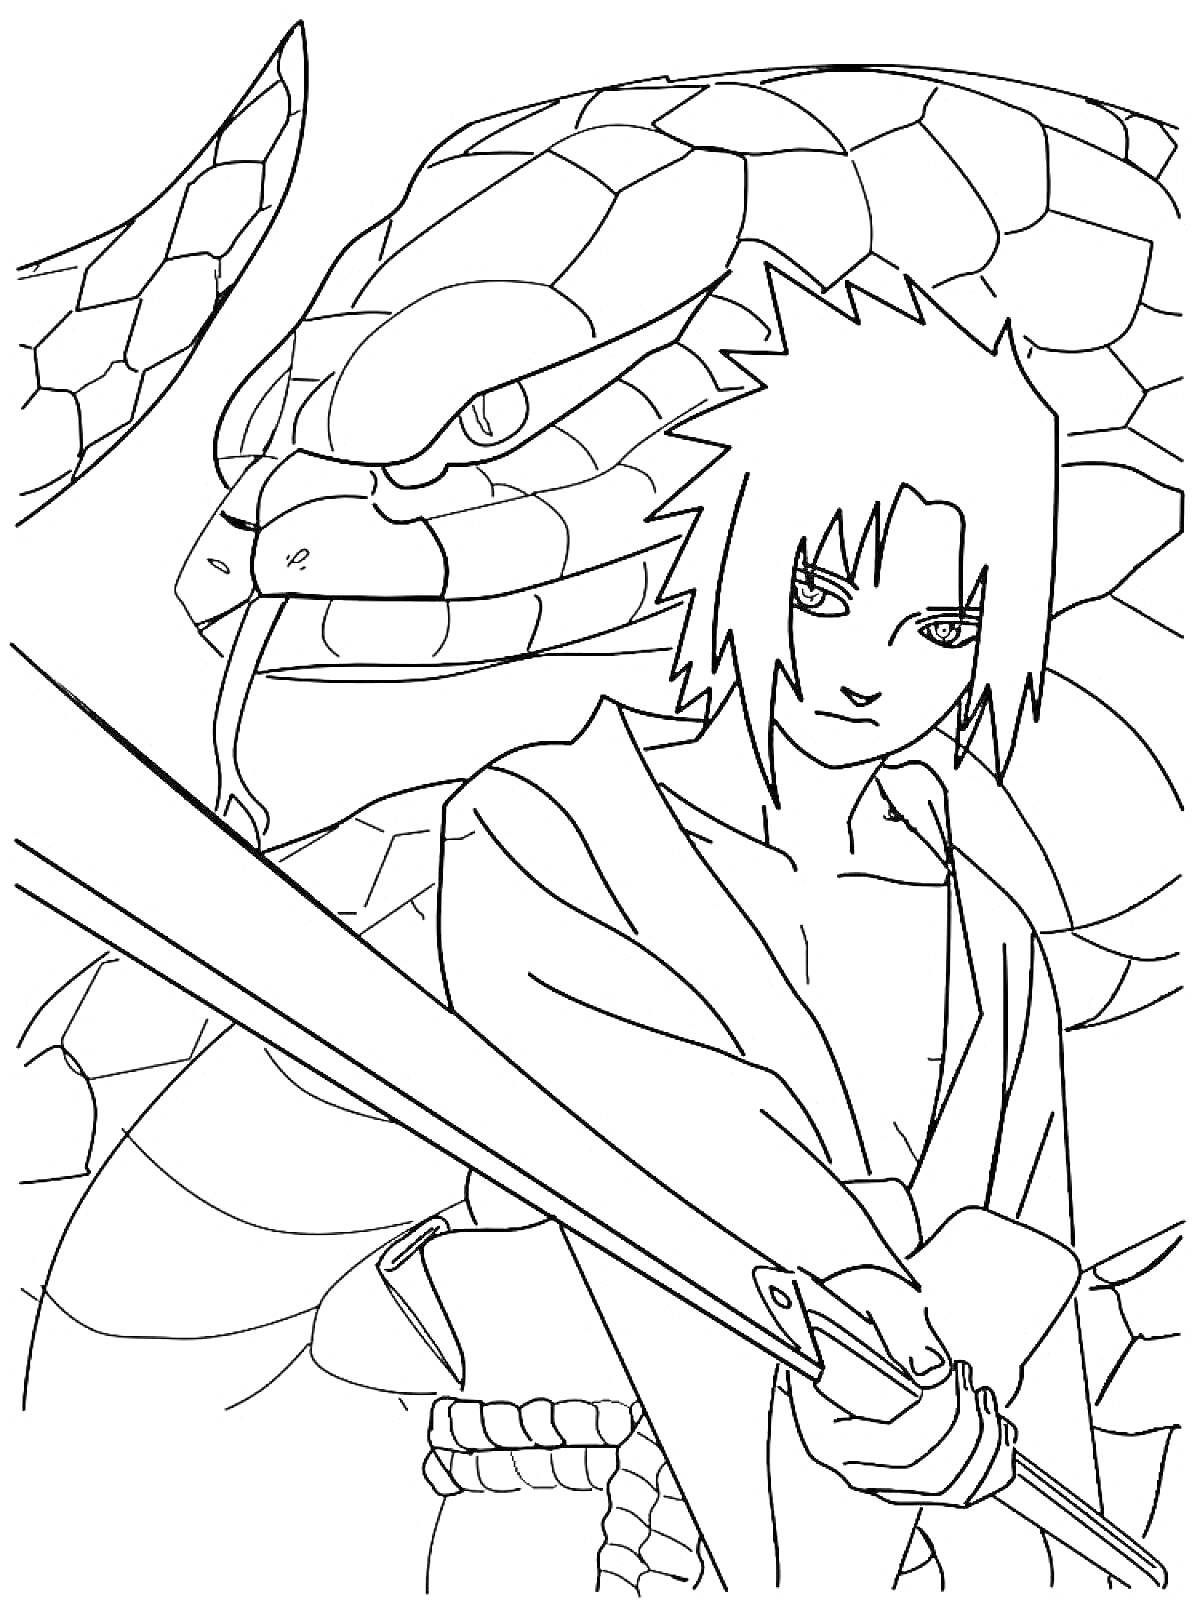 Раскраска Саске Учиха с гигантской змеей и мечом